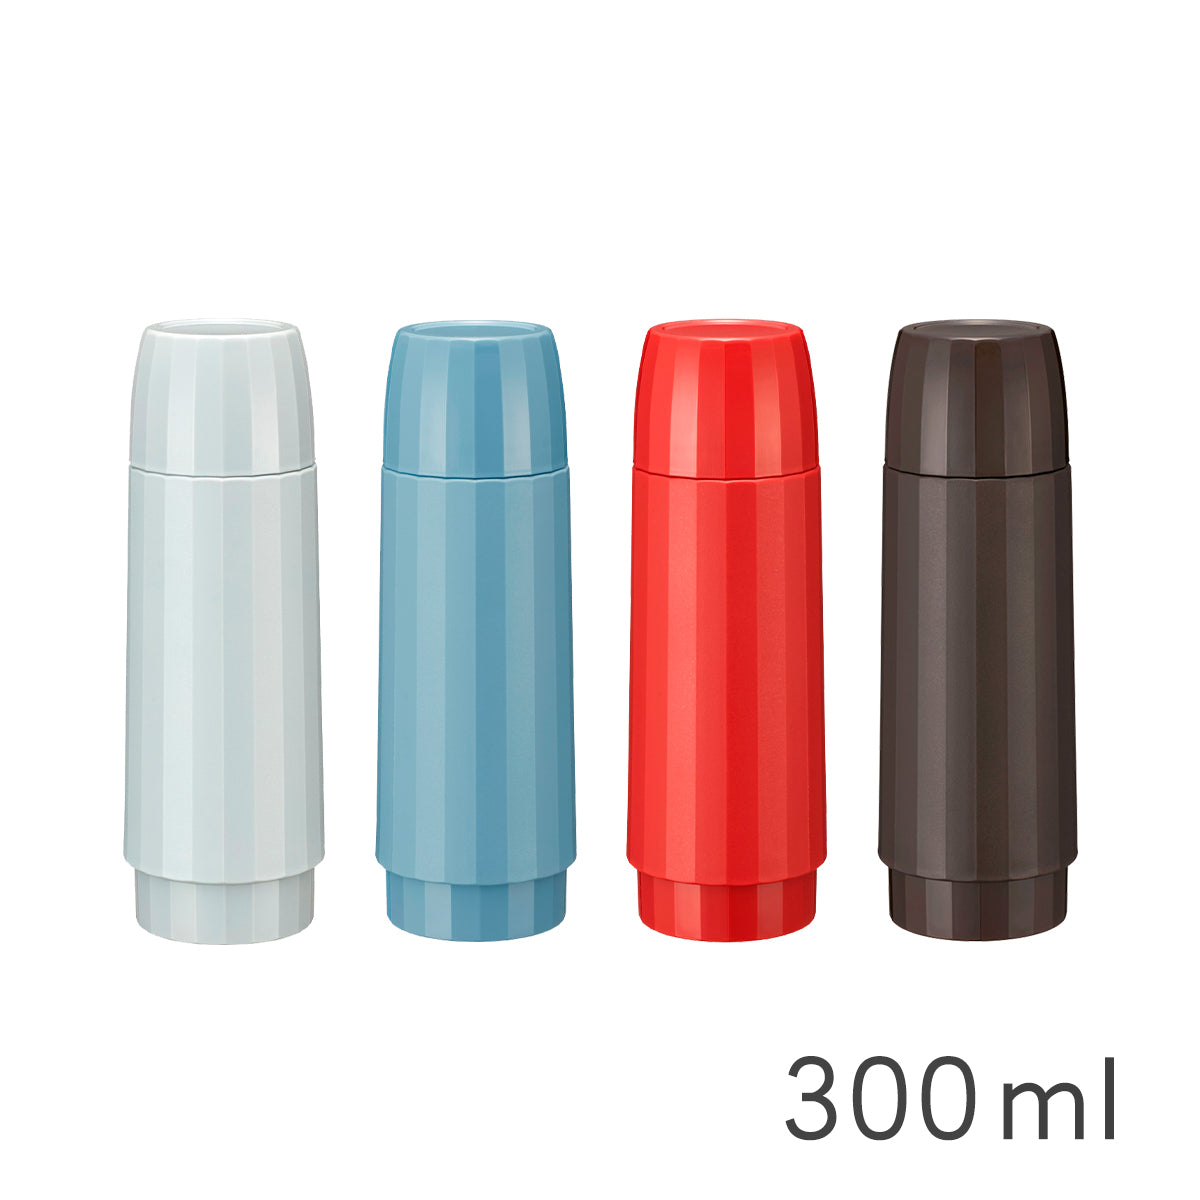 【經典復古】杯蓋型不鏽鋼保溫保冷瓶300ml (MSK-A030)